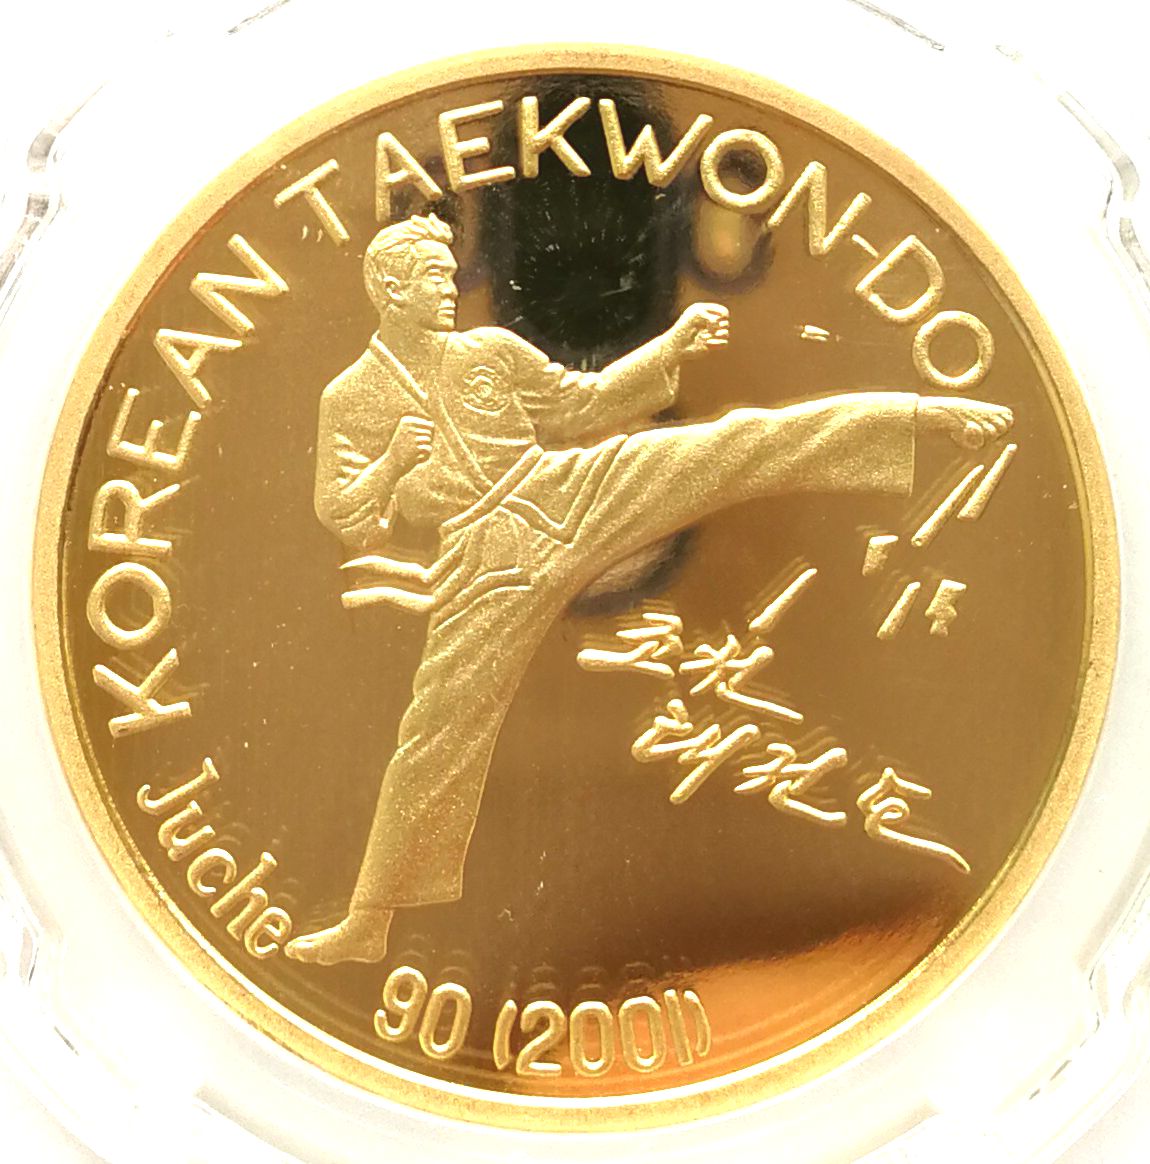 L3377, Korea "Taewondo" Proof Bronze Coin 2001, Rare Specimen, CSIS Grade - Click Image to Close